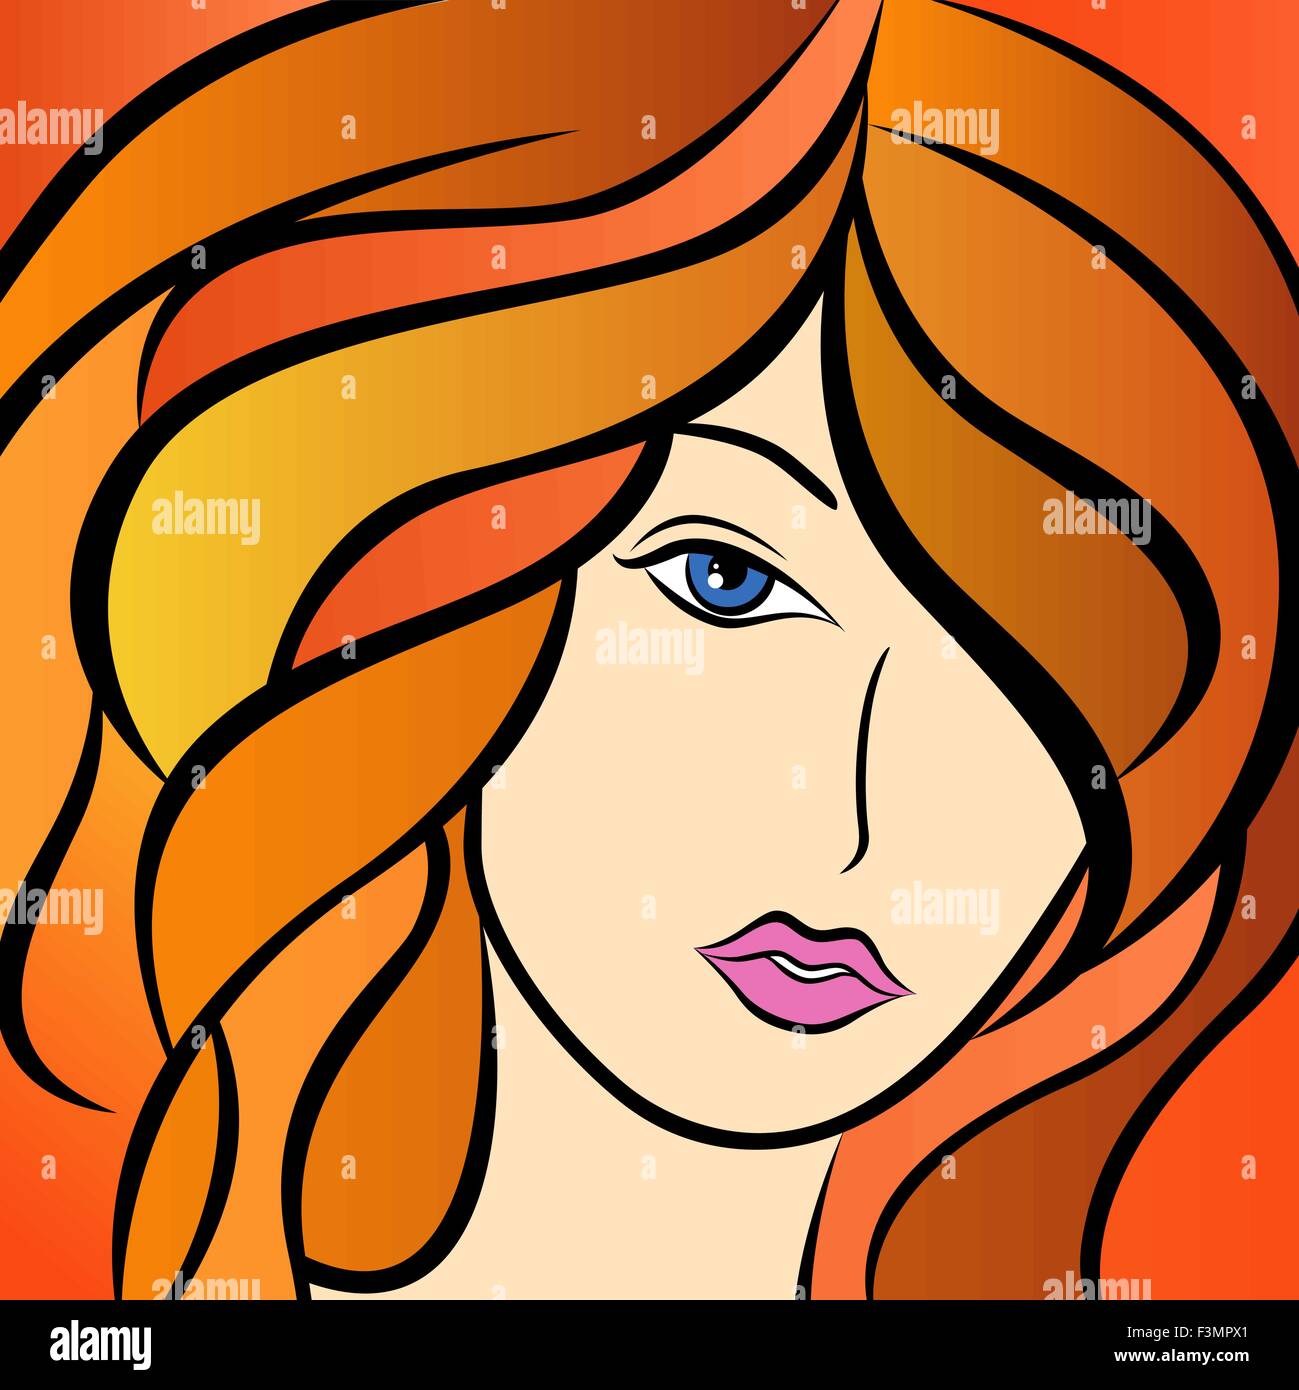 Abstract bellissimo ritratto di donna con capelli fiery e colorato disegno a mano oggetti grafici vettoriali Illustrazione Vettoriale